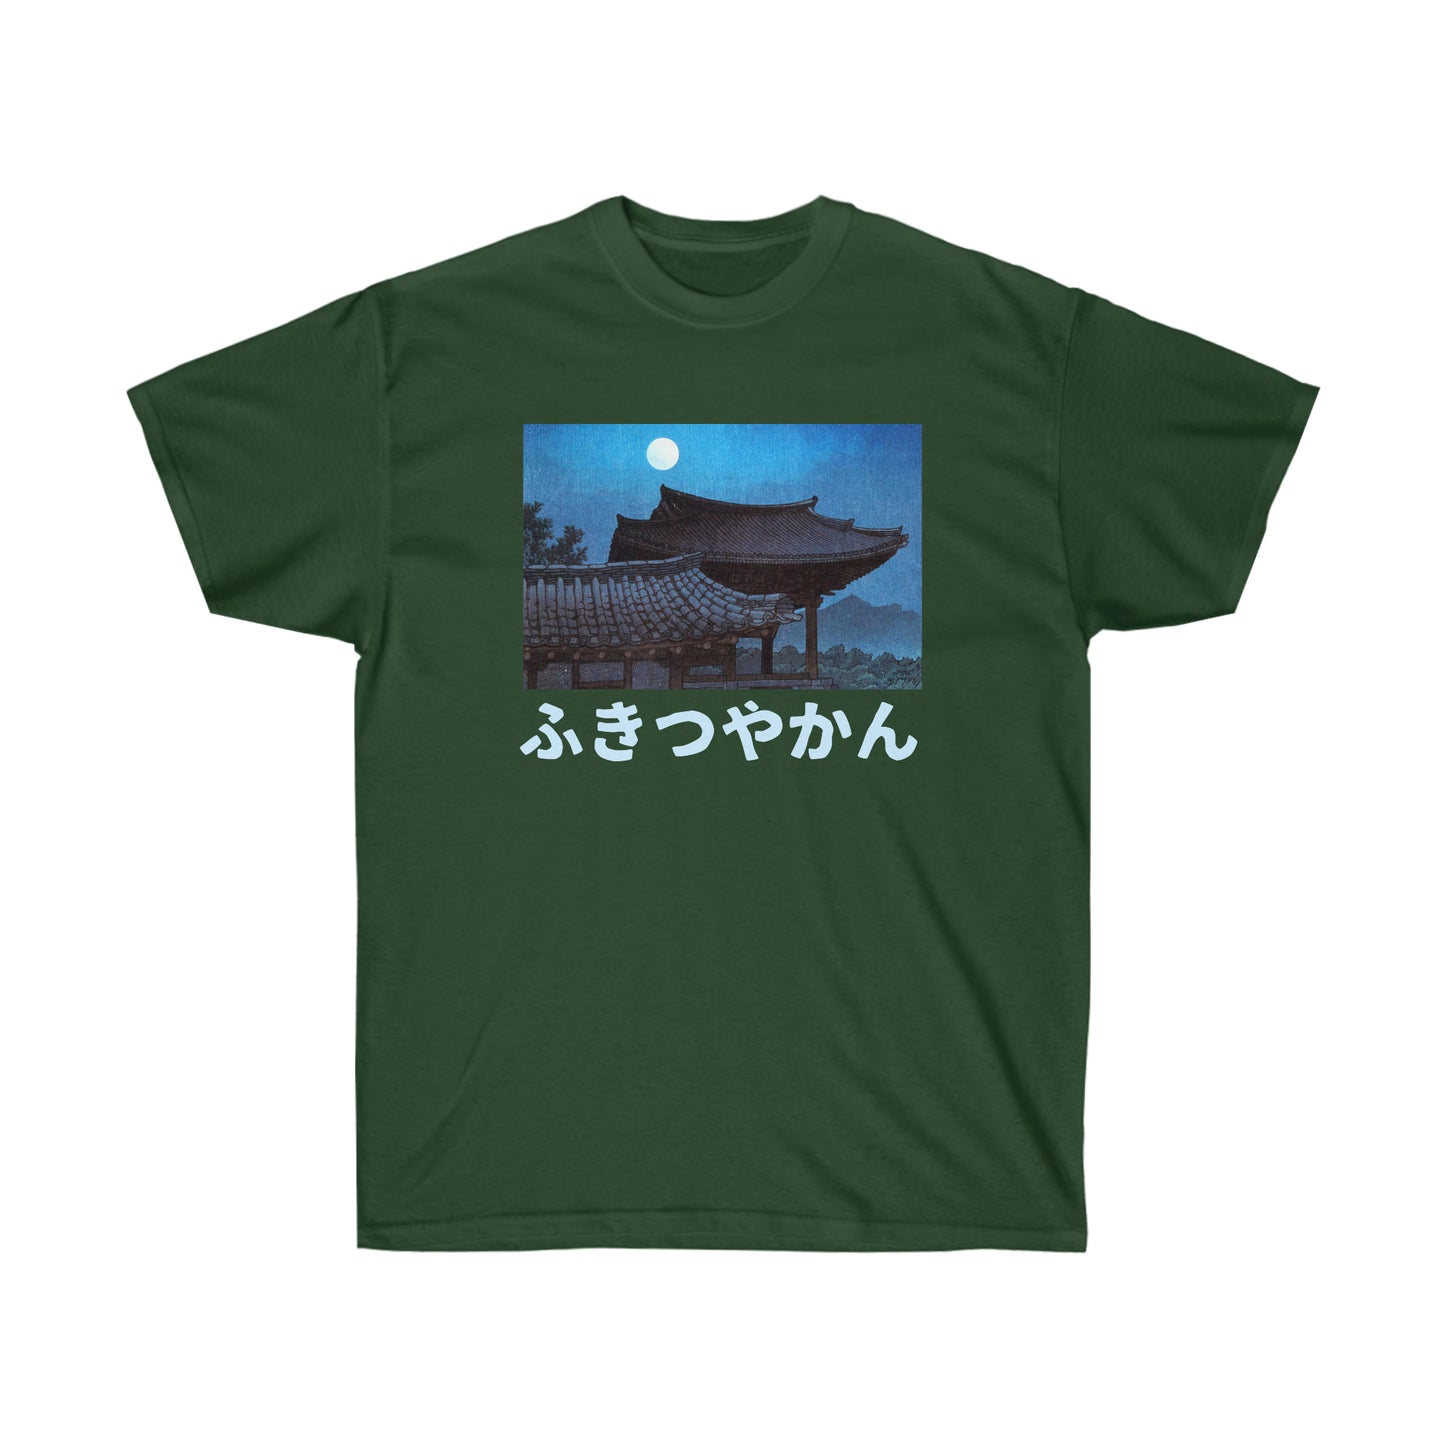 Japan Night Streetwear Vintage T-shirt Gift For Edo period